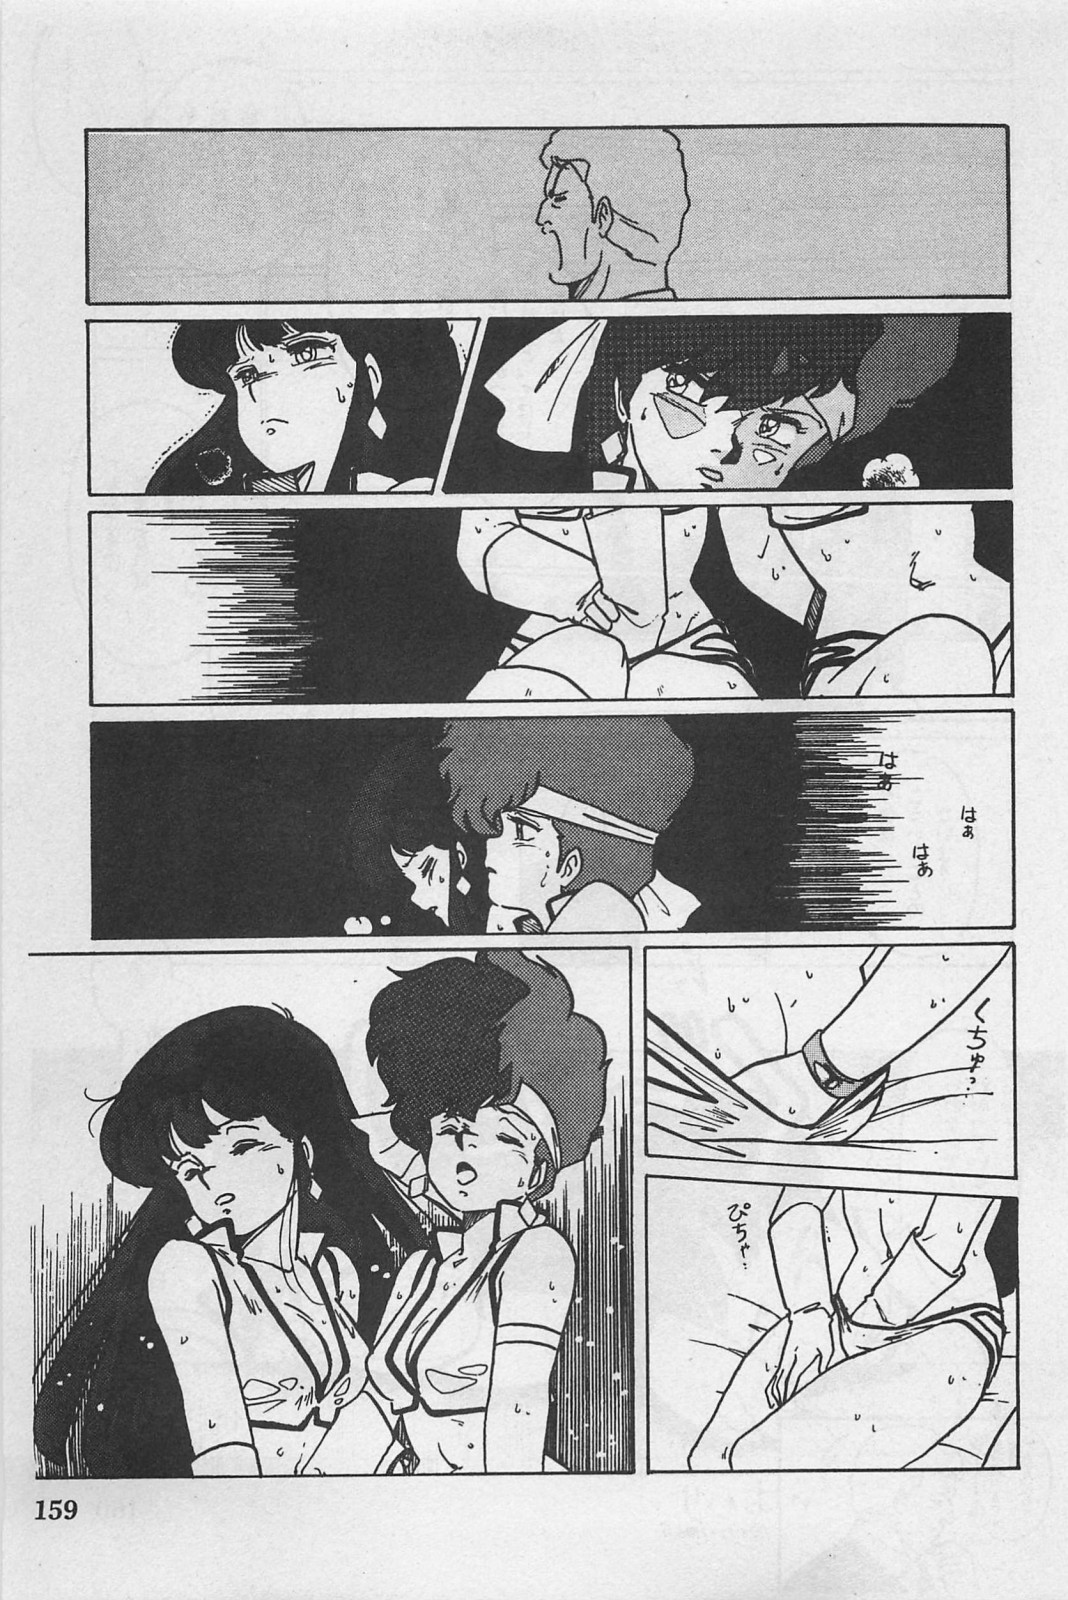 美少女症候群 (1985)